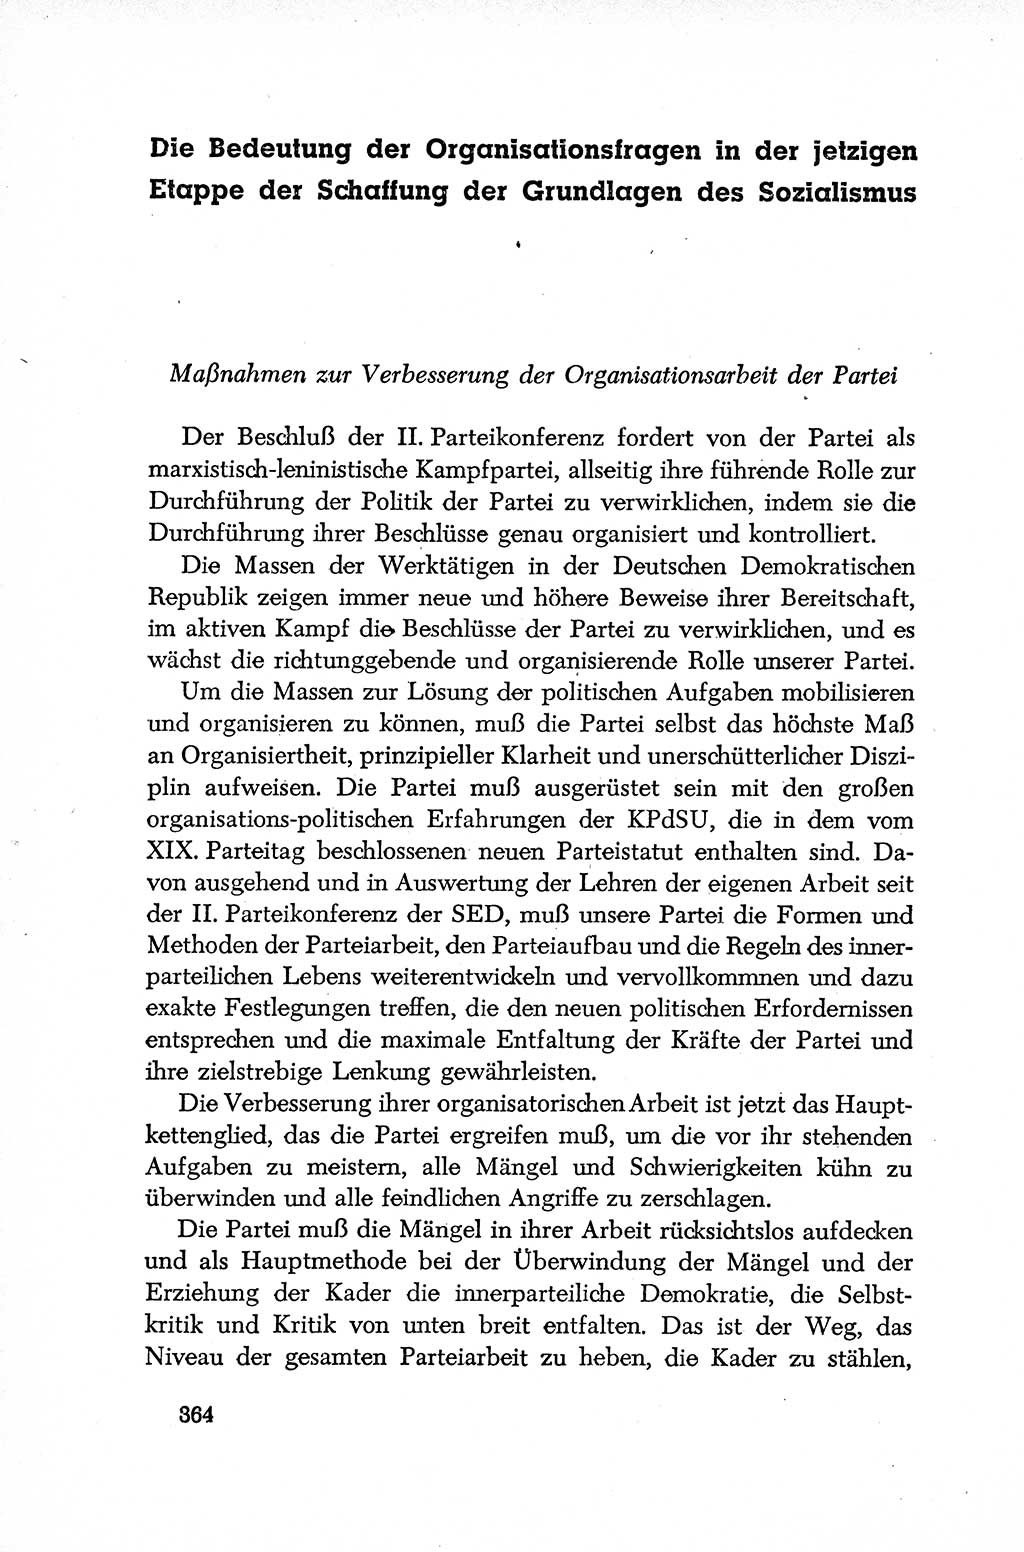 Dokumente der Sozialistischen Einheitspartei Deutschlands (SED) [Deutsche Demokratische Republik (DDR)] 1952-1953, Seite 364 (Dok. SED DDR 1952-1953, S. 364)